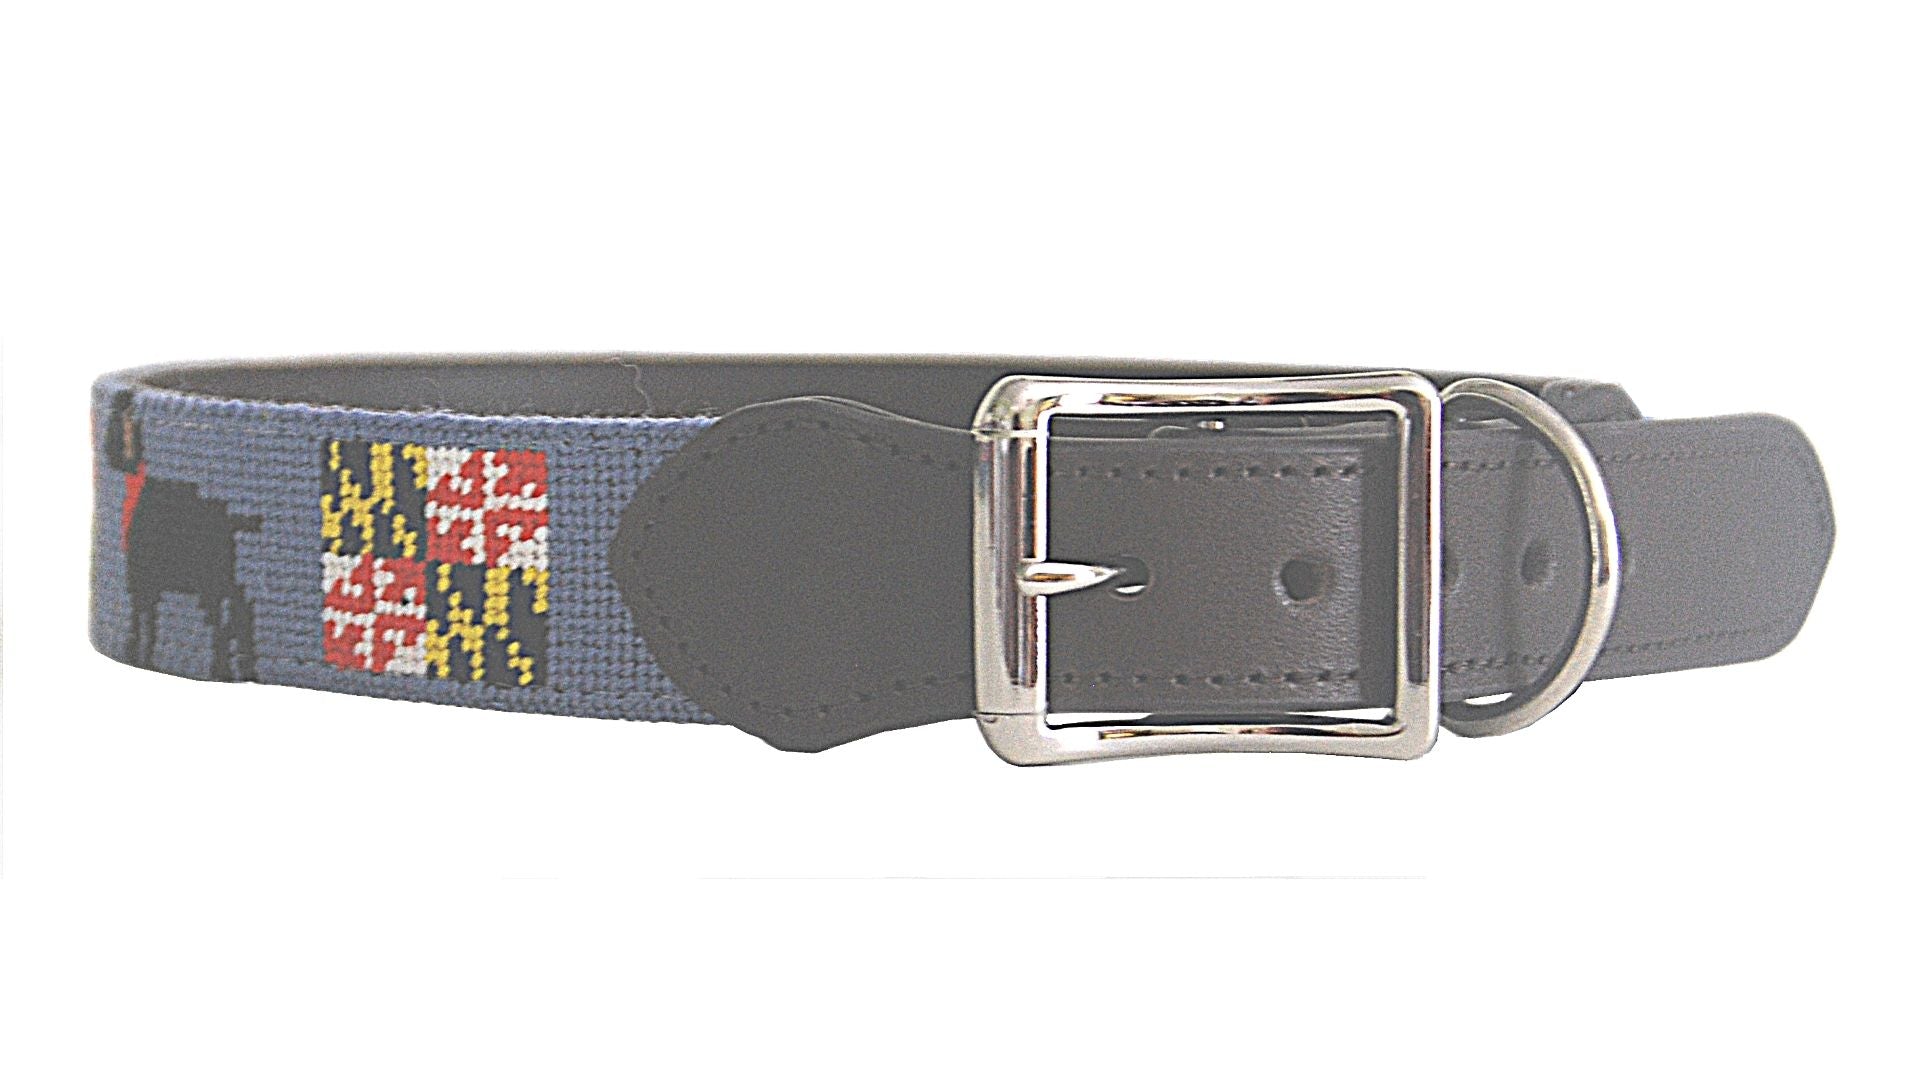 Needlepoint Dog Collar-Black Lab Maryland Flag Needlepoint Design